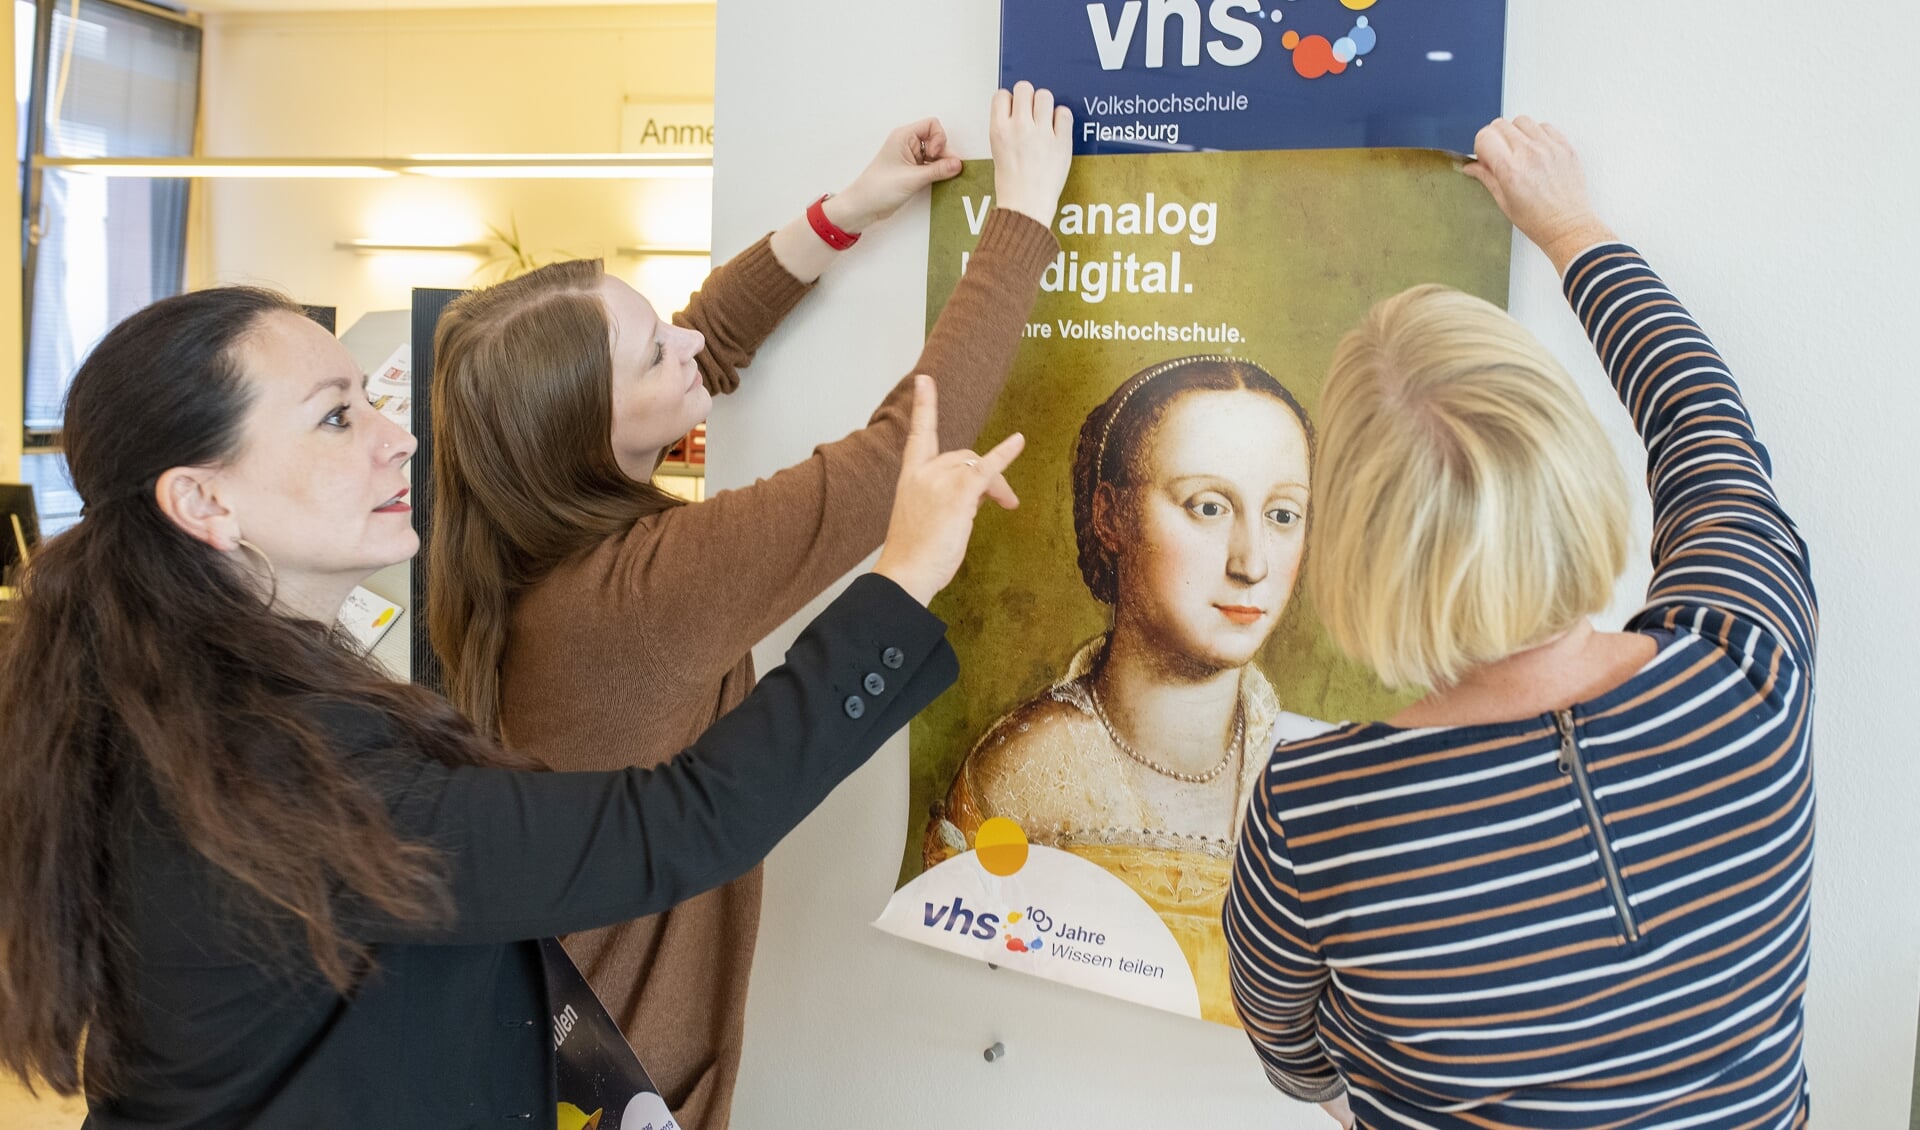 Sidste år fejrede VHS i Flensborg 100-års jubilæum, som pædagogisk leder Djenina Mortensen (til venstre) her sammen med kollegaer sætter plakater op for. Her var det digitale tilbud ikke det, som borgere møder i dag, et år senere. Arkivfoto: Tim Riediger